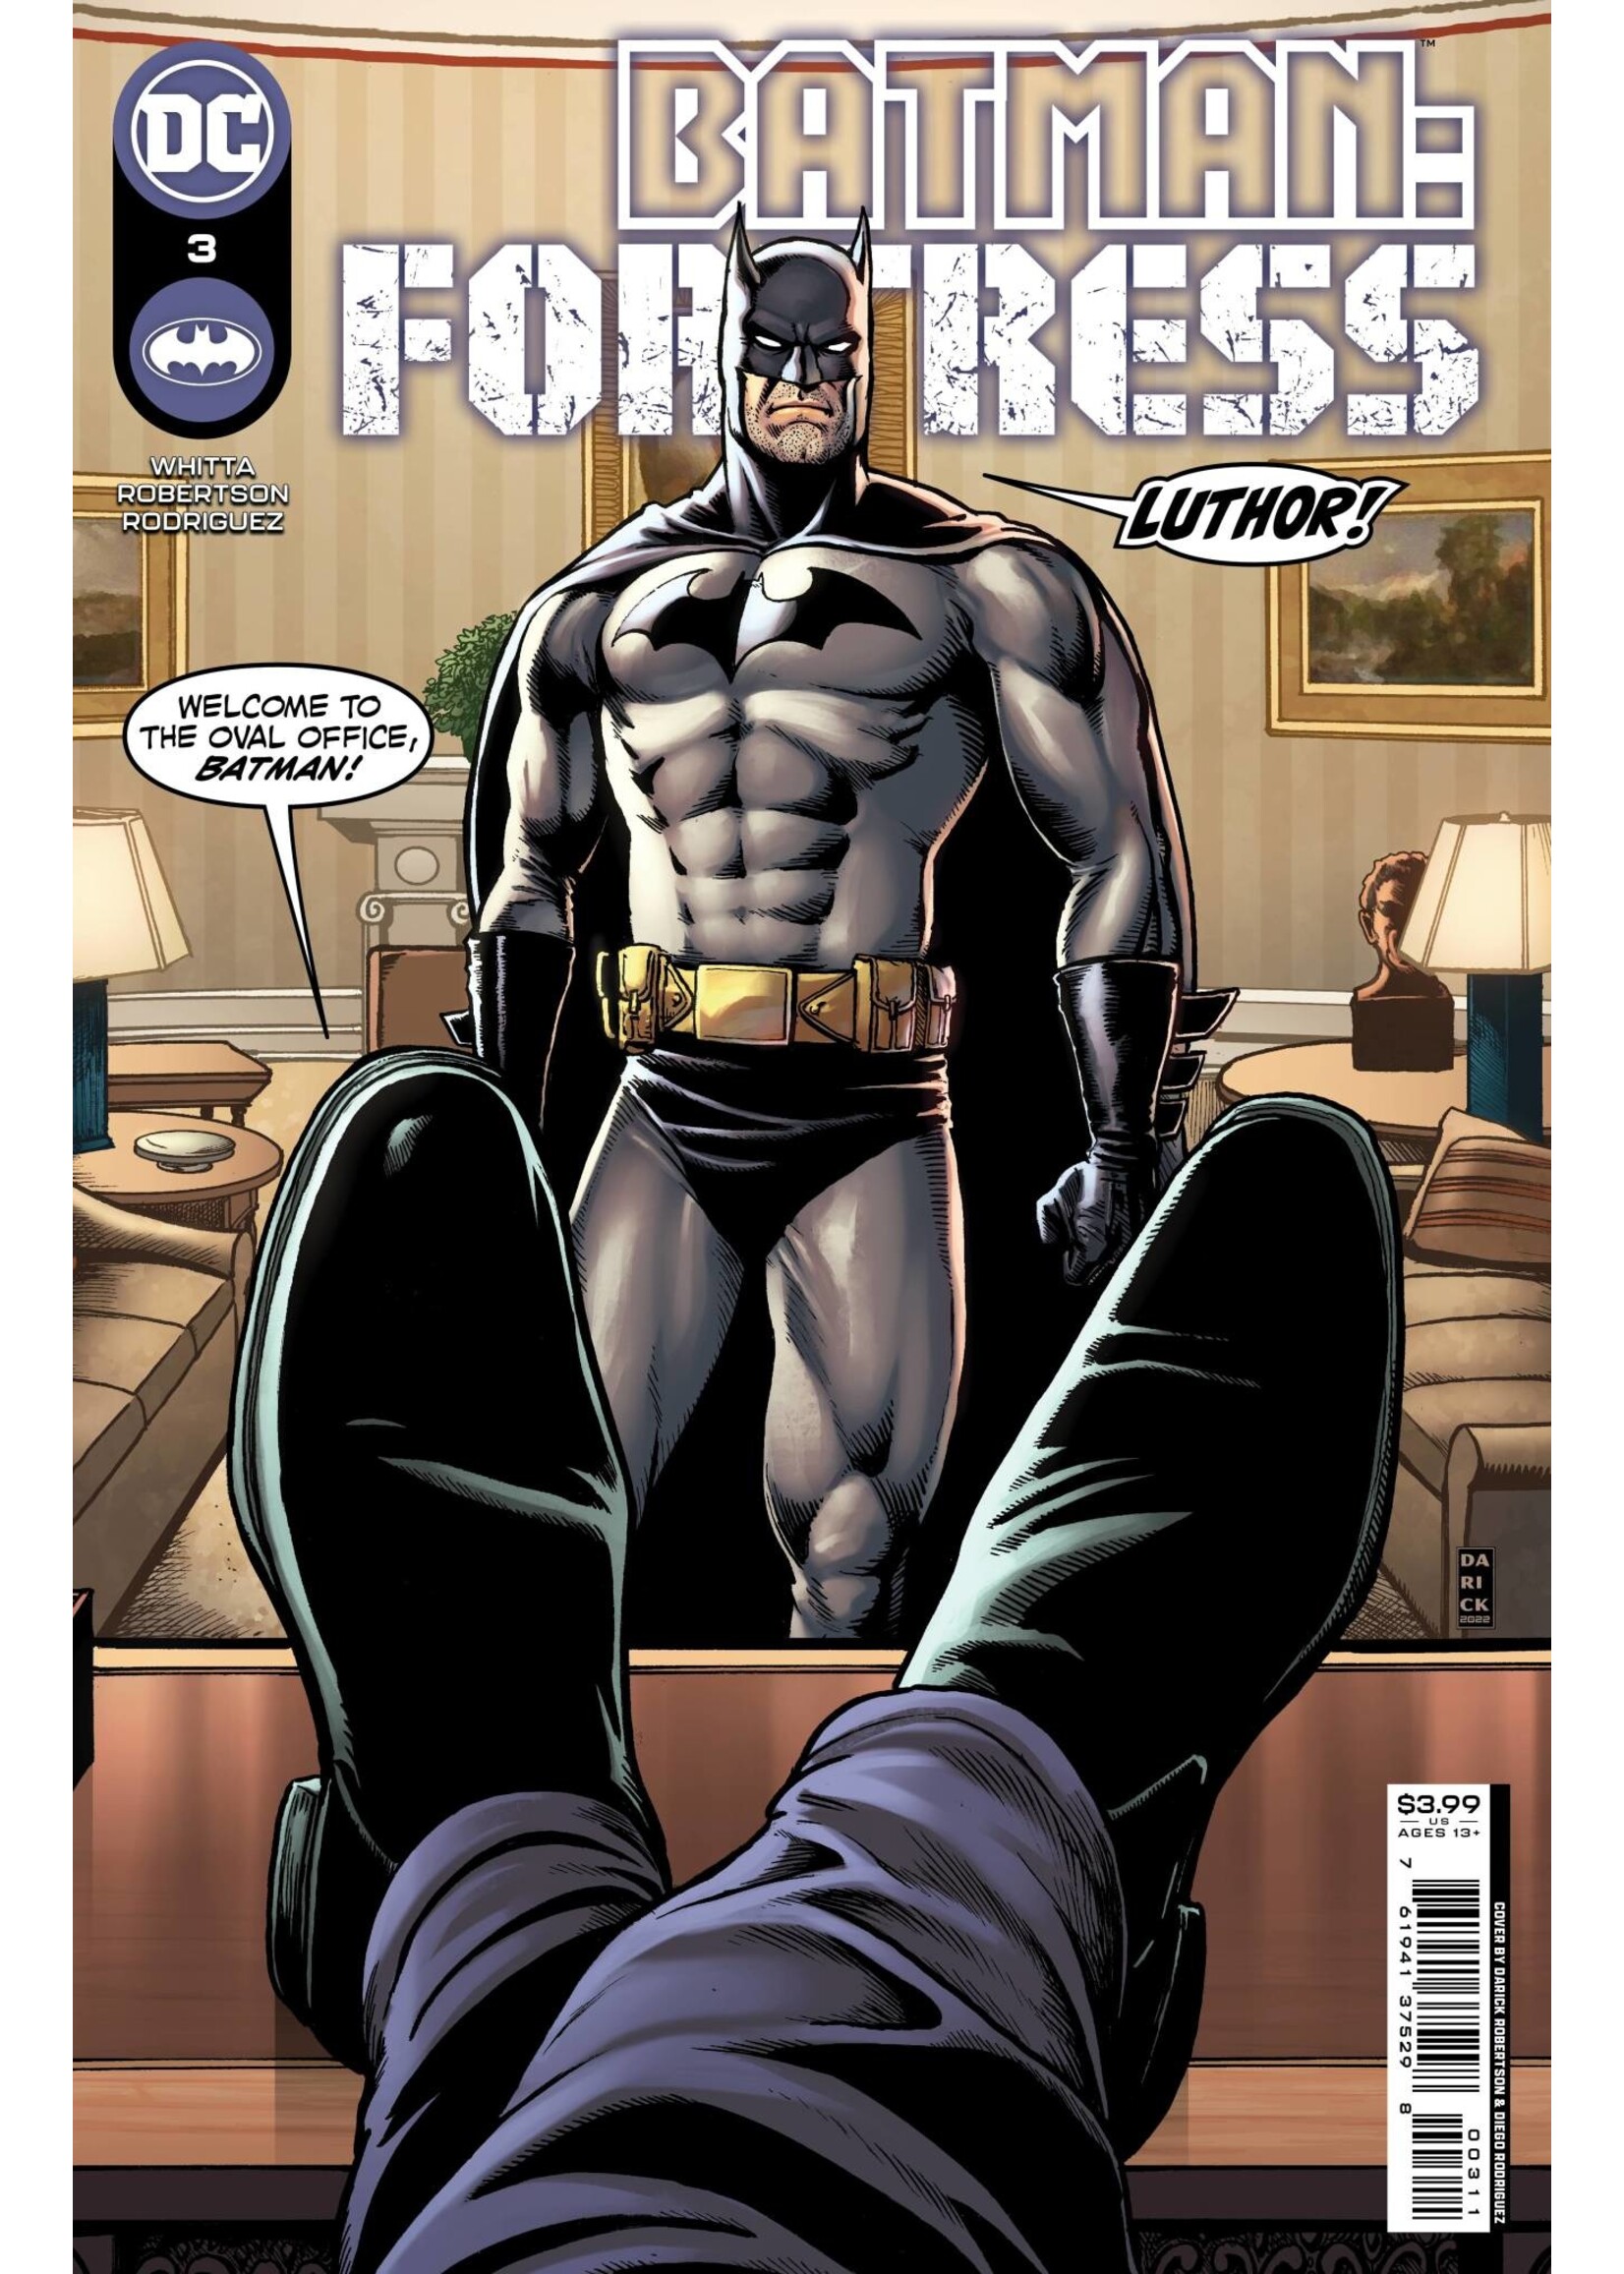 DC COMICS BATMAN FORTRESS #3 (OF 8) CVR A ROBERTSON